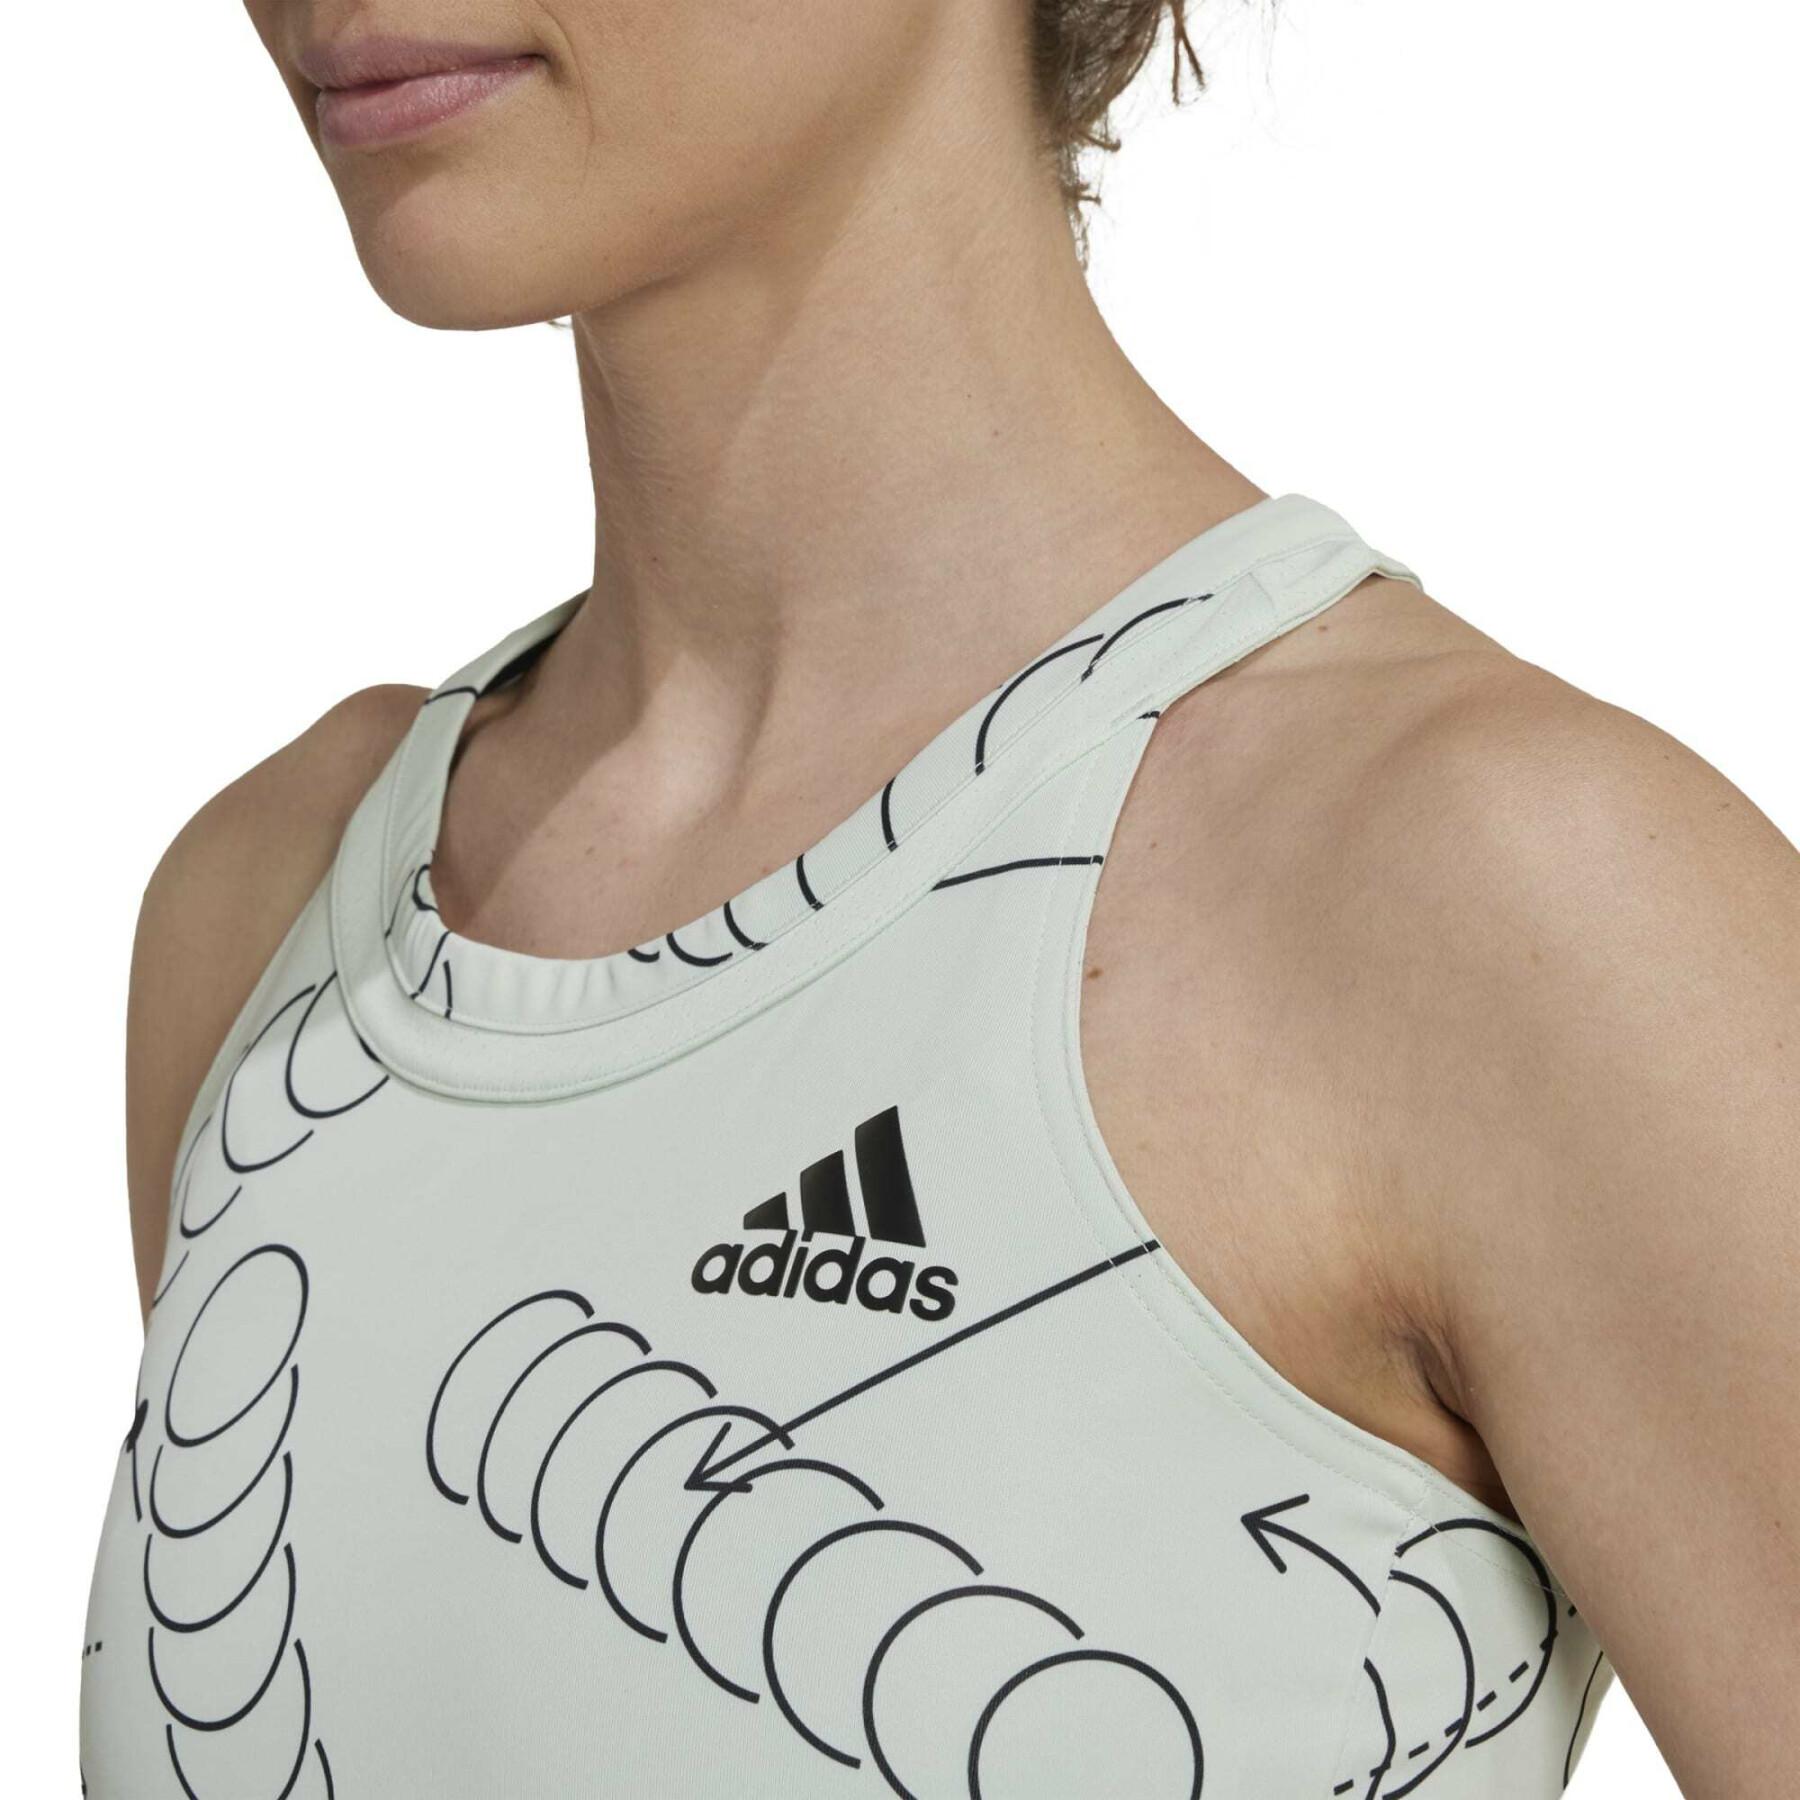 Camiseta de tirantes gráfica del club de tenis de mujer adidas